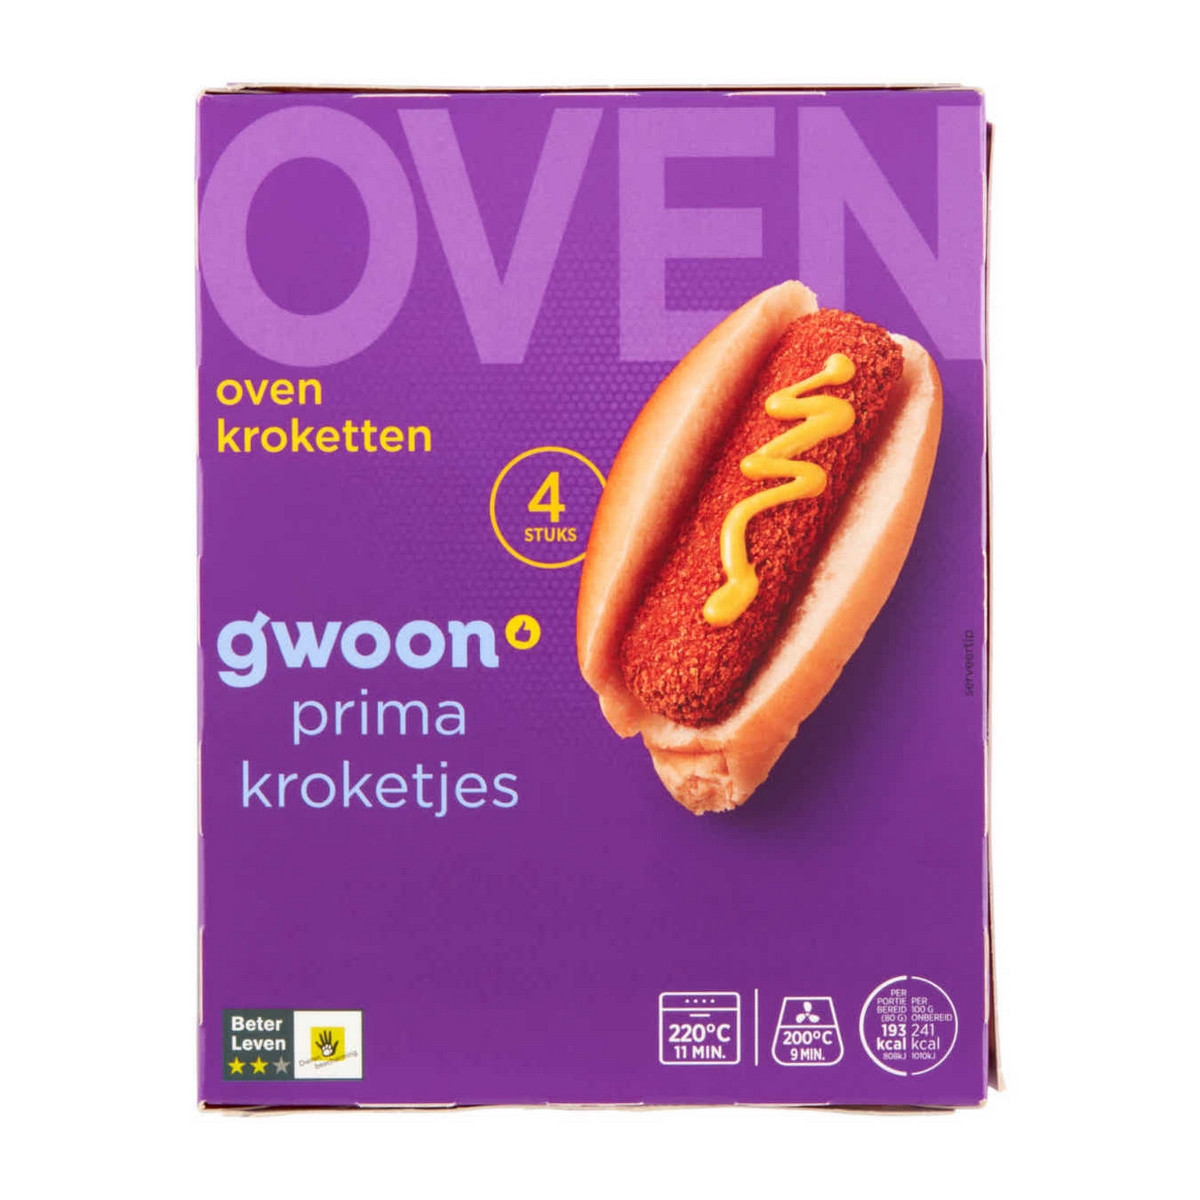 G'woon Oven Kroketten